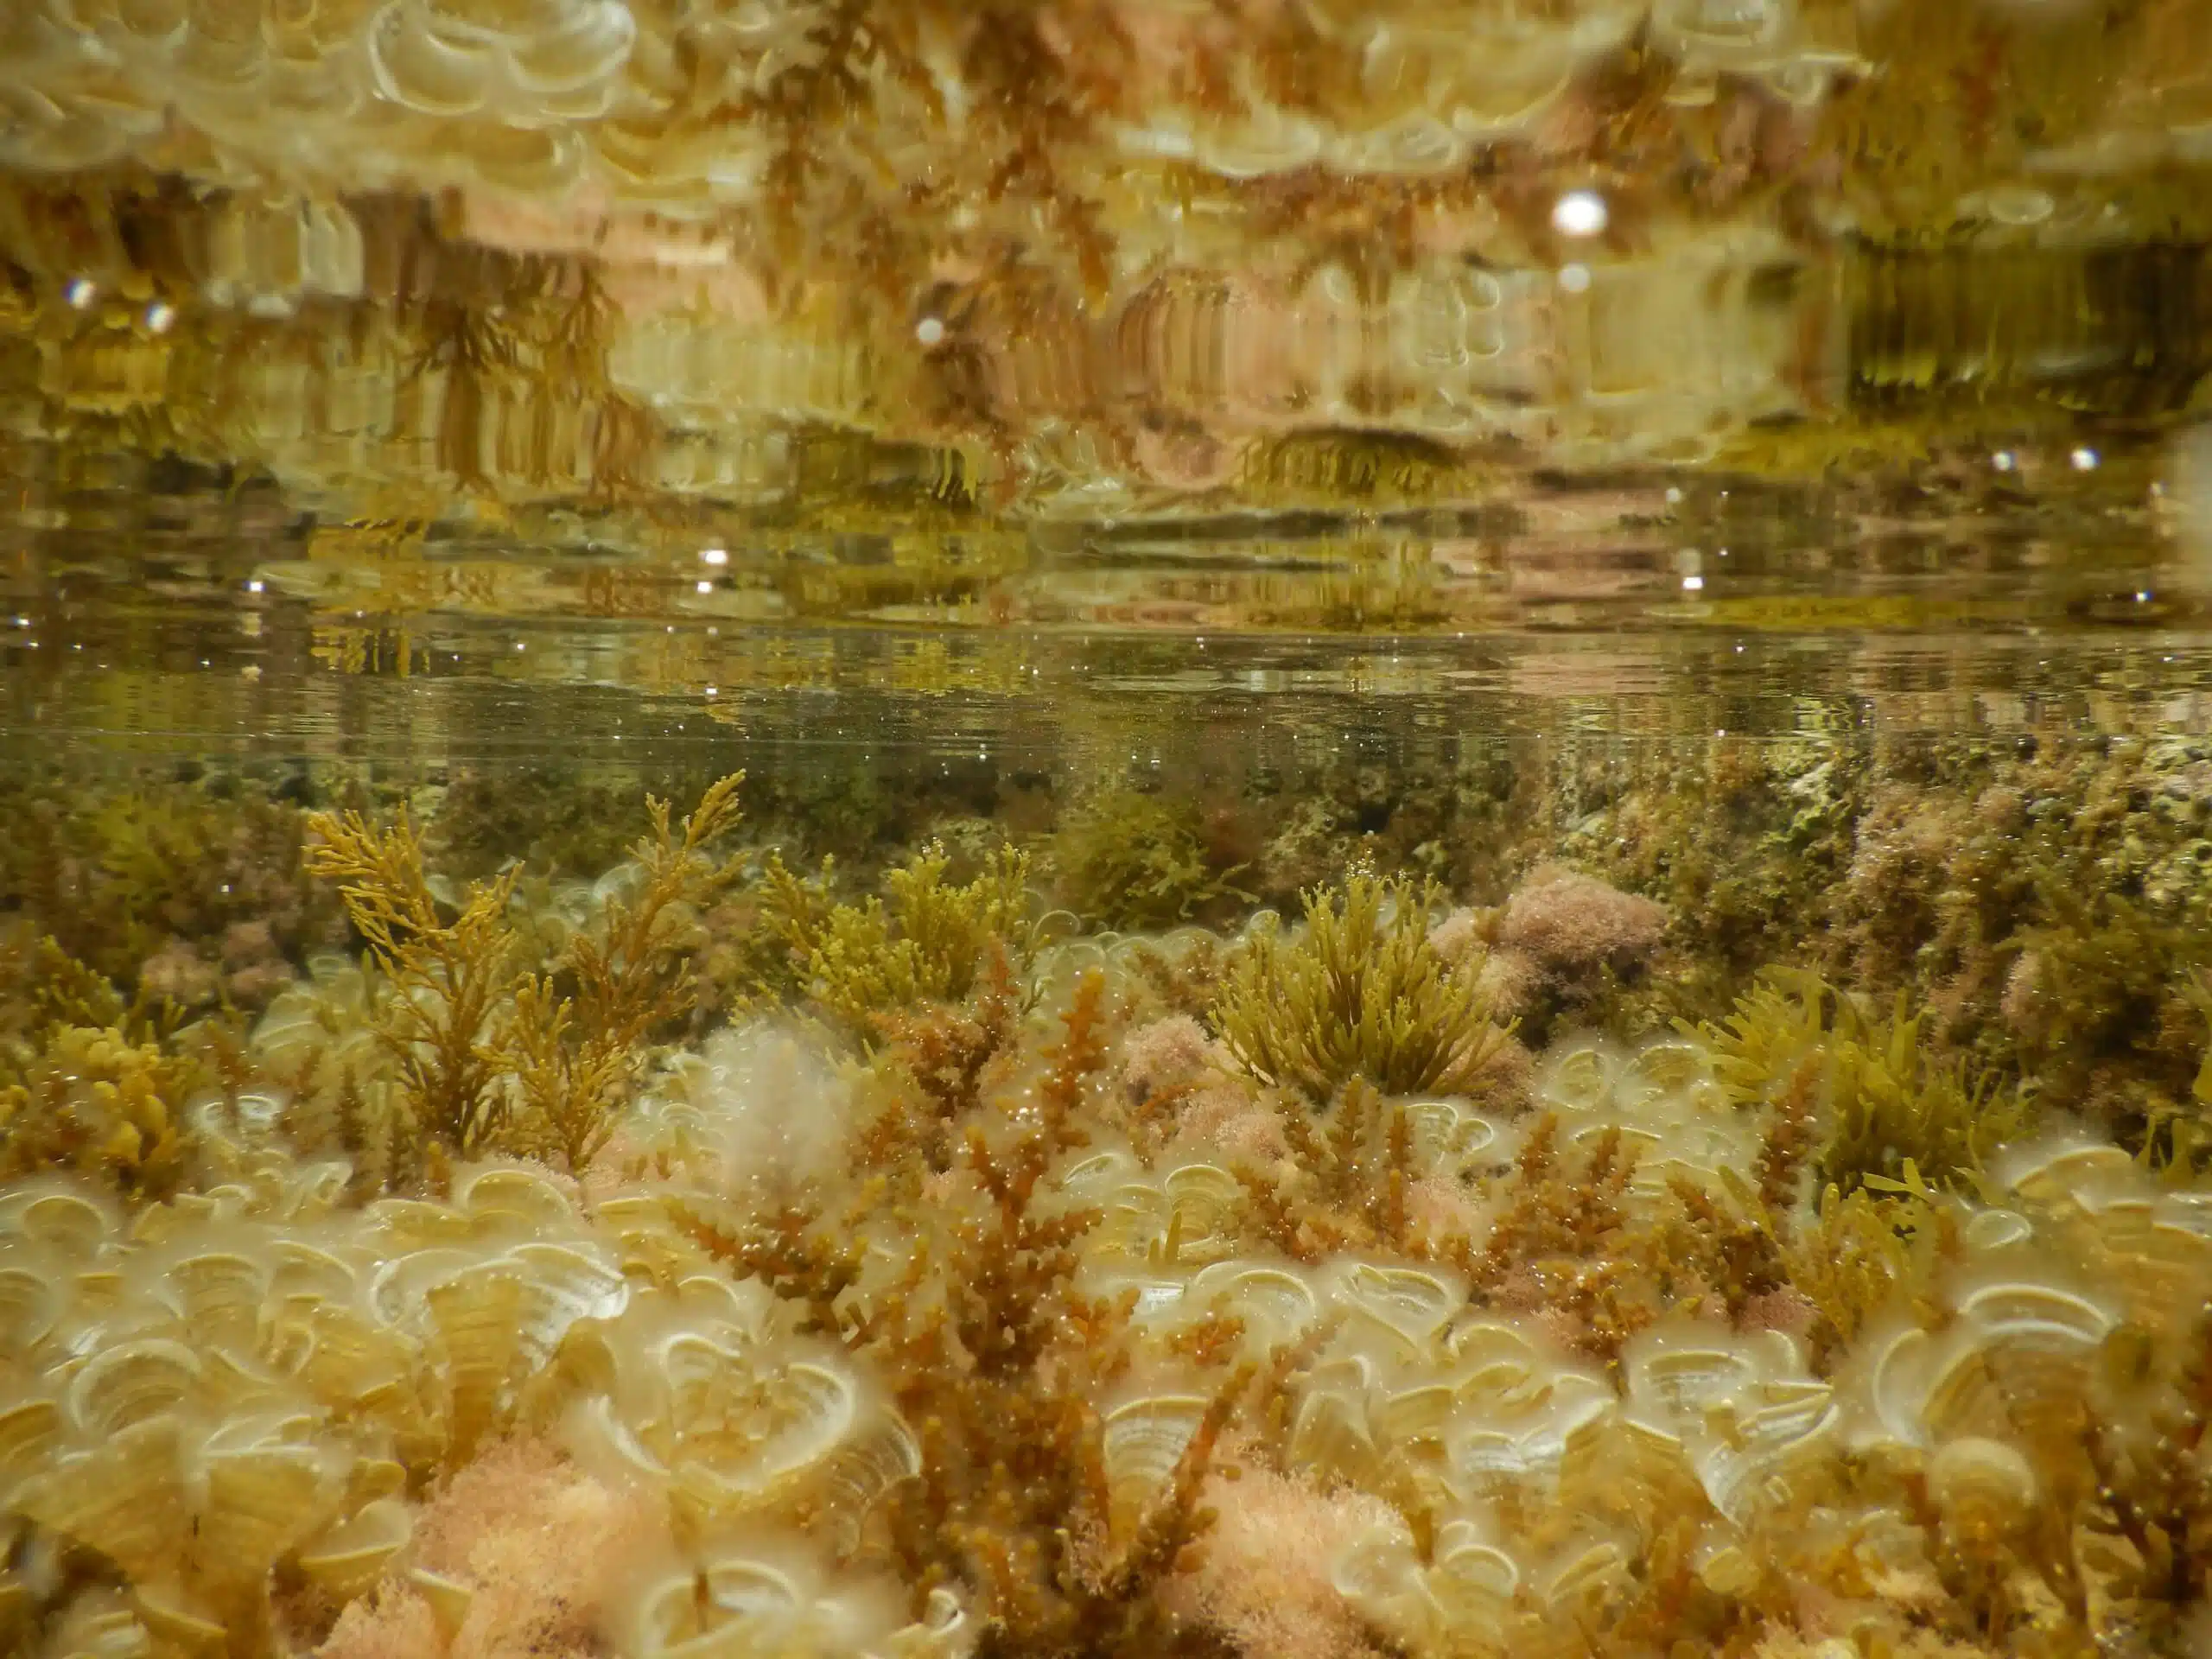 "الطحالب الأجنبية لديها القدرة على تعويض بعض وظائف الطحالب المحلية: سواء كموطن أو في استعادة فقدان الكربون الأزرق." الصورة عن طريق مختبر ريلوف